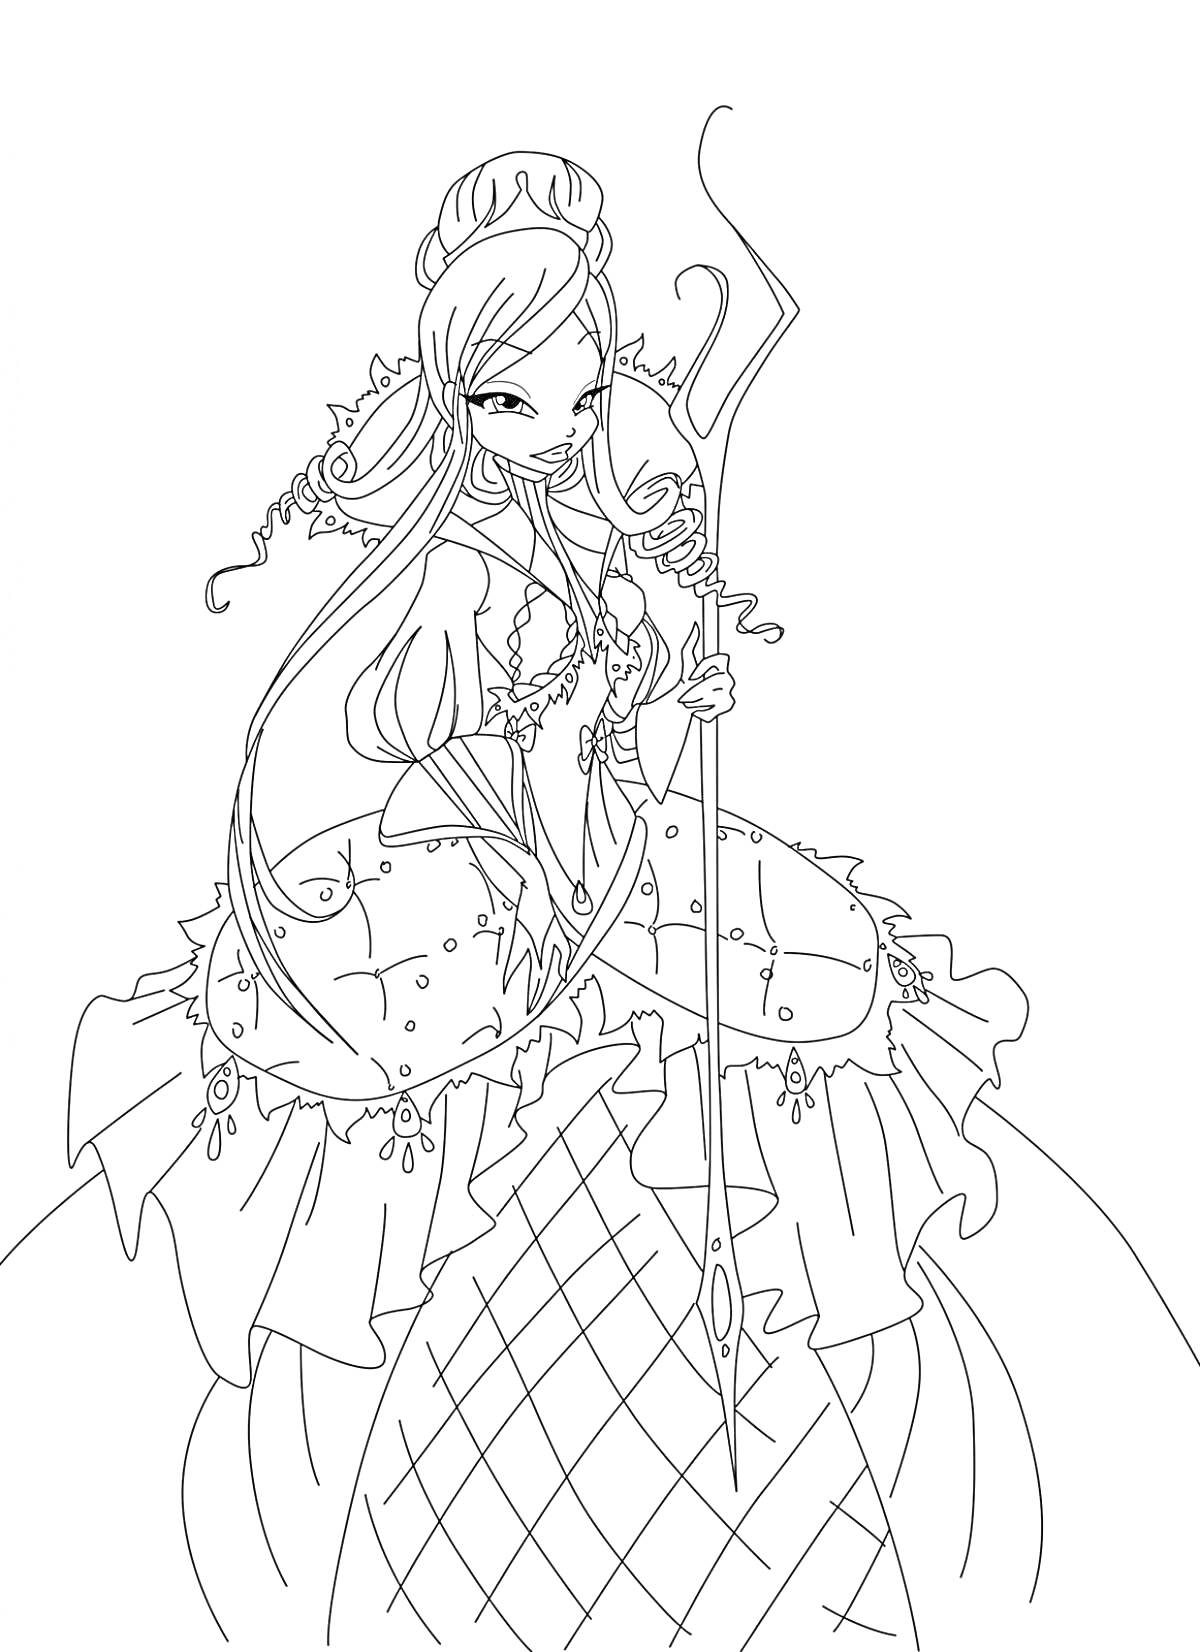 Винкс принцесса с длинными волнистыми волосами в короне и длинном платье, держащая жезл